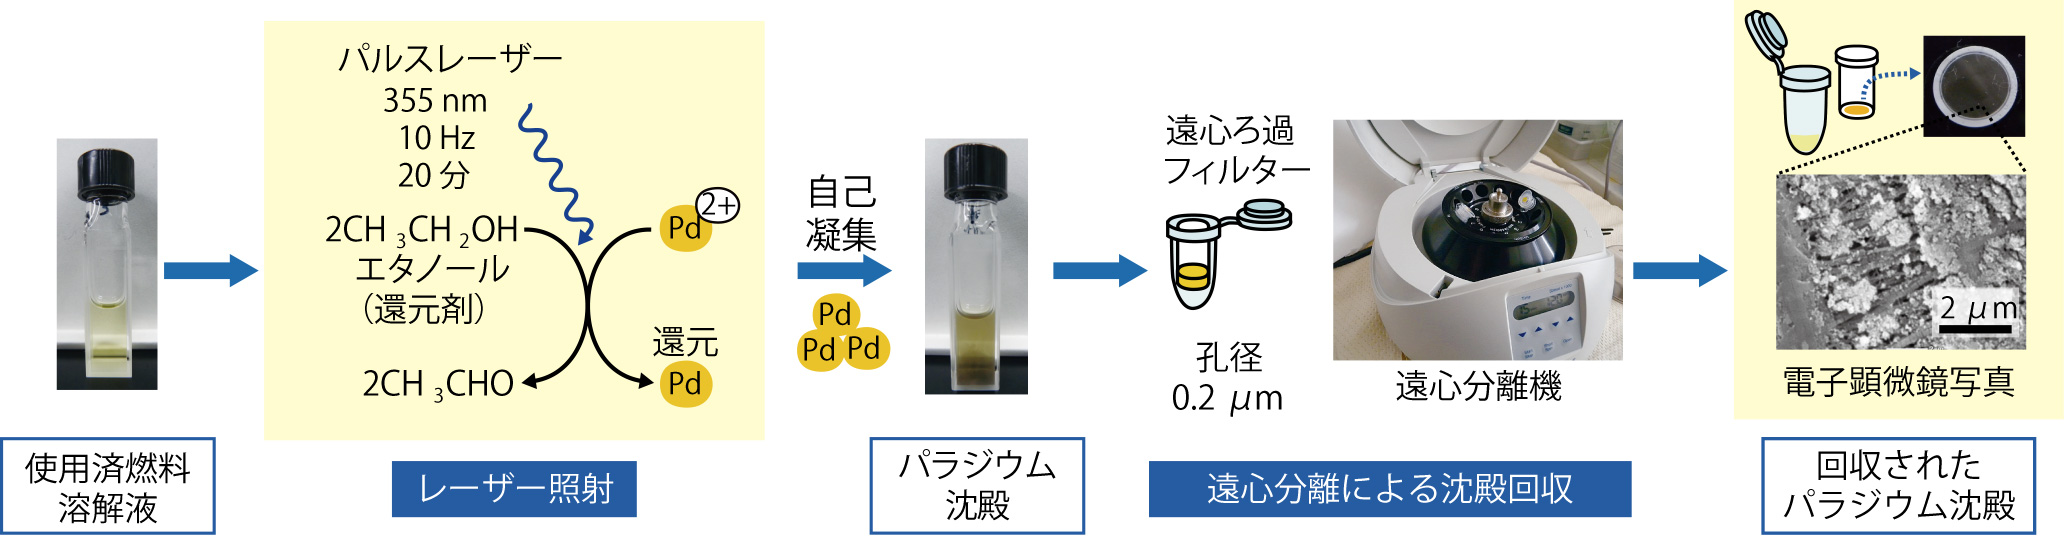 図4-17　液体試料にレーザーを照射して高純度Pdを回収する原理と操作手順